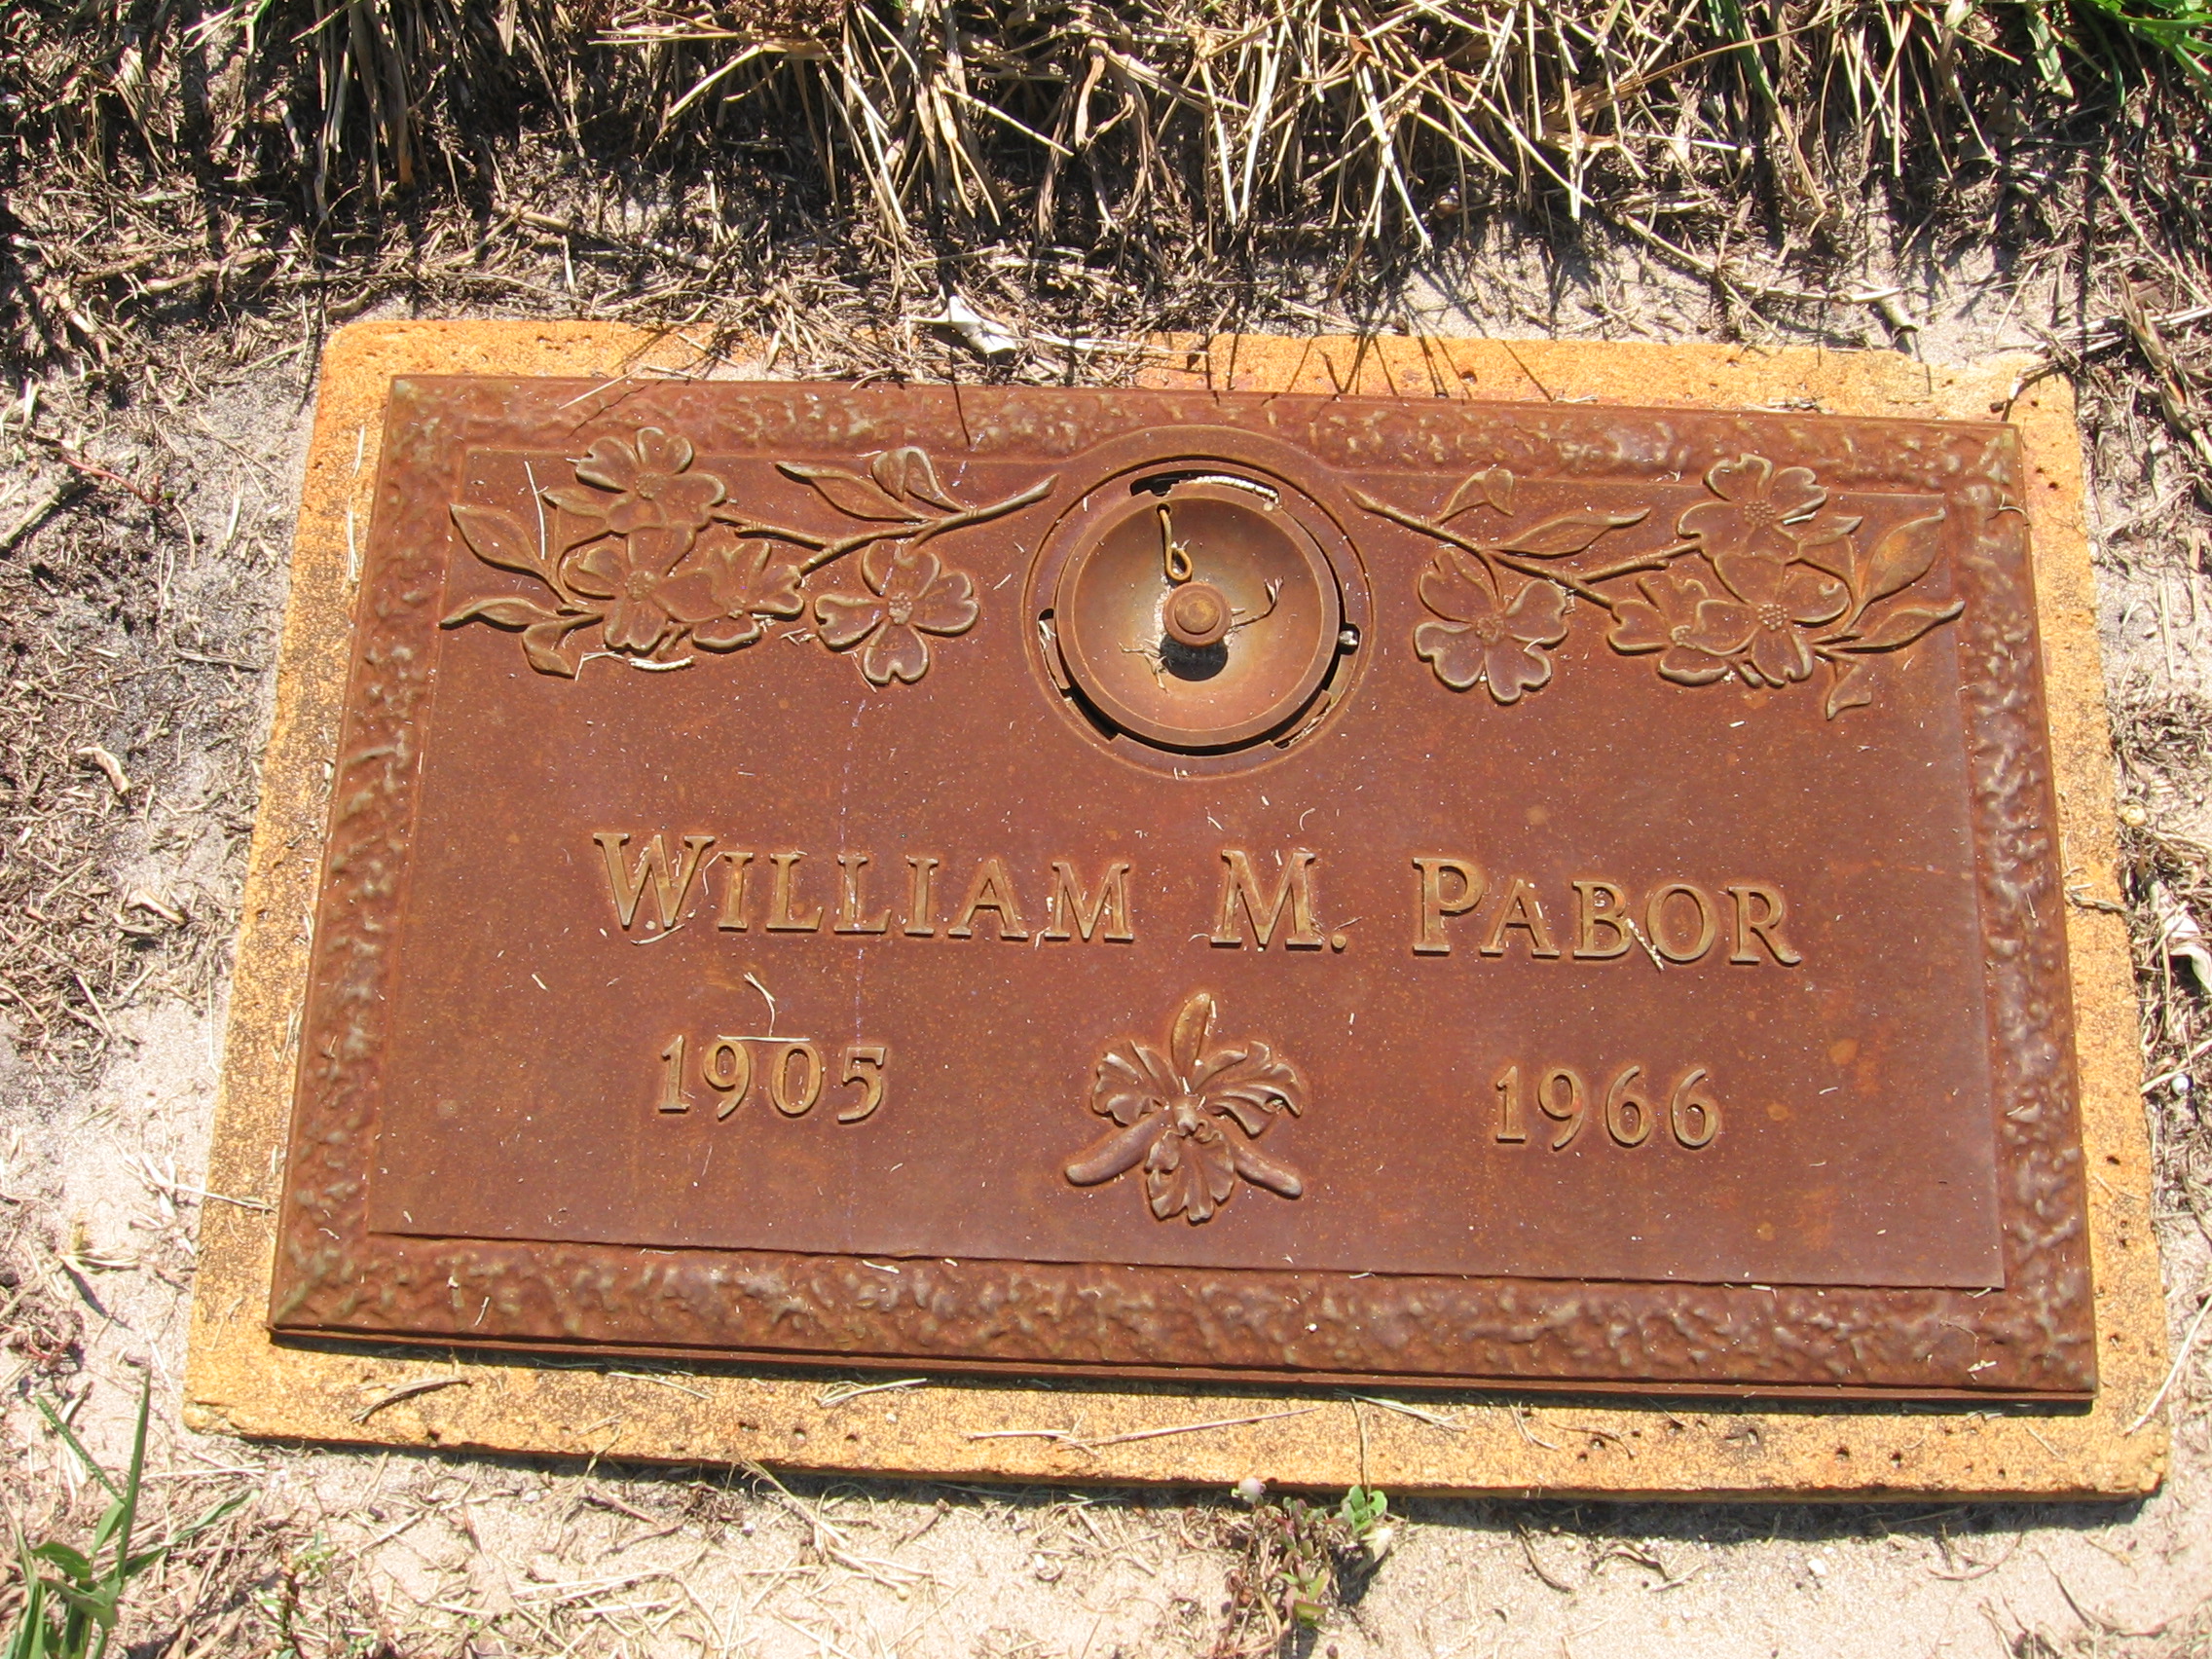 William W Pabor